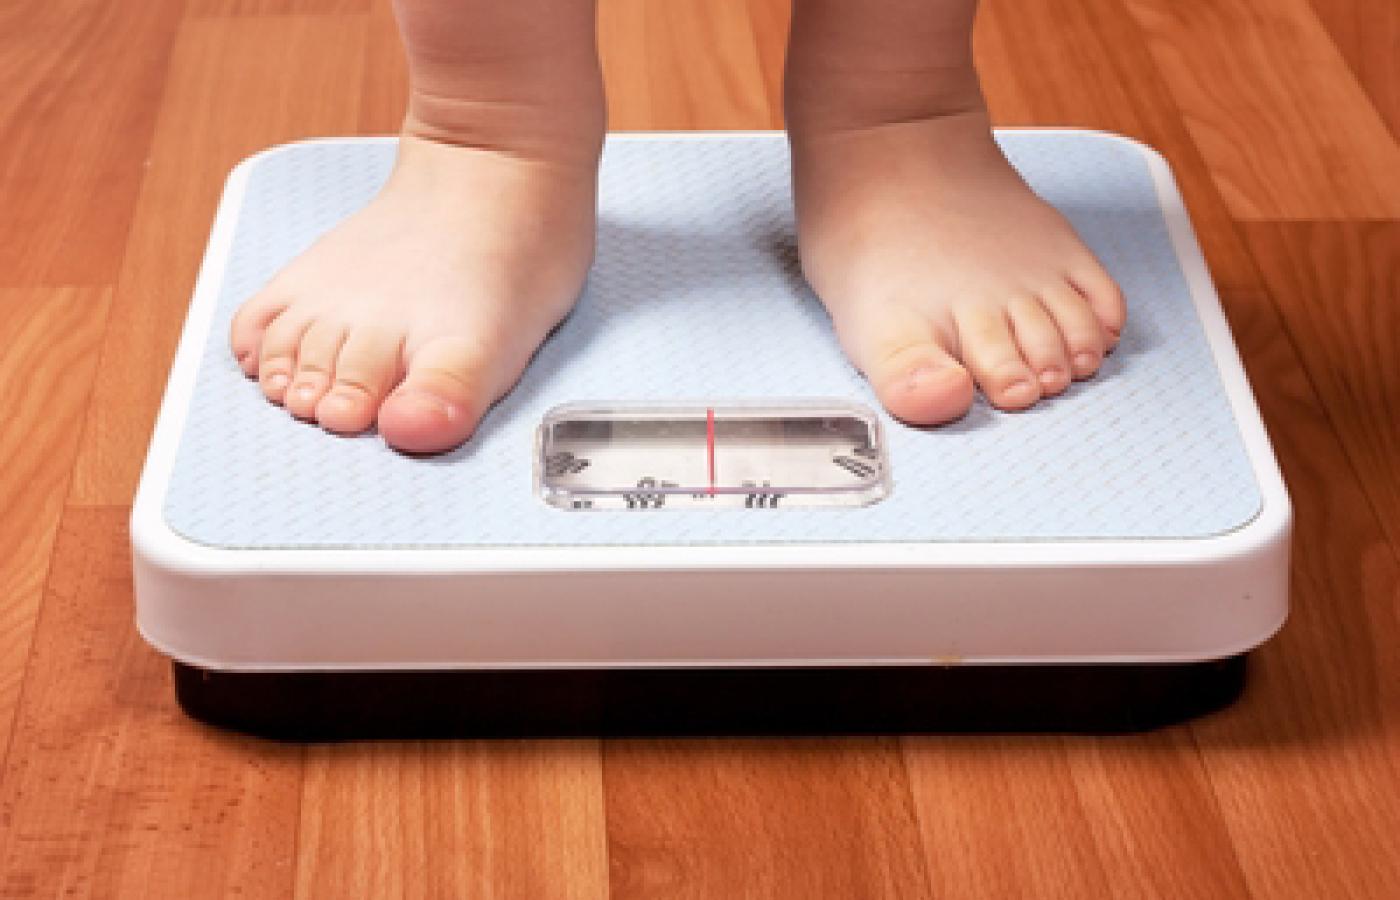 Z nowego raportu Medical Royal Colleges wynika, że otyły jest co czwarty dorosły mieszkaniec Anglii.